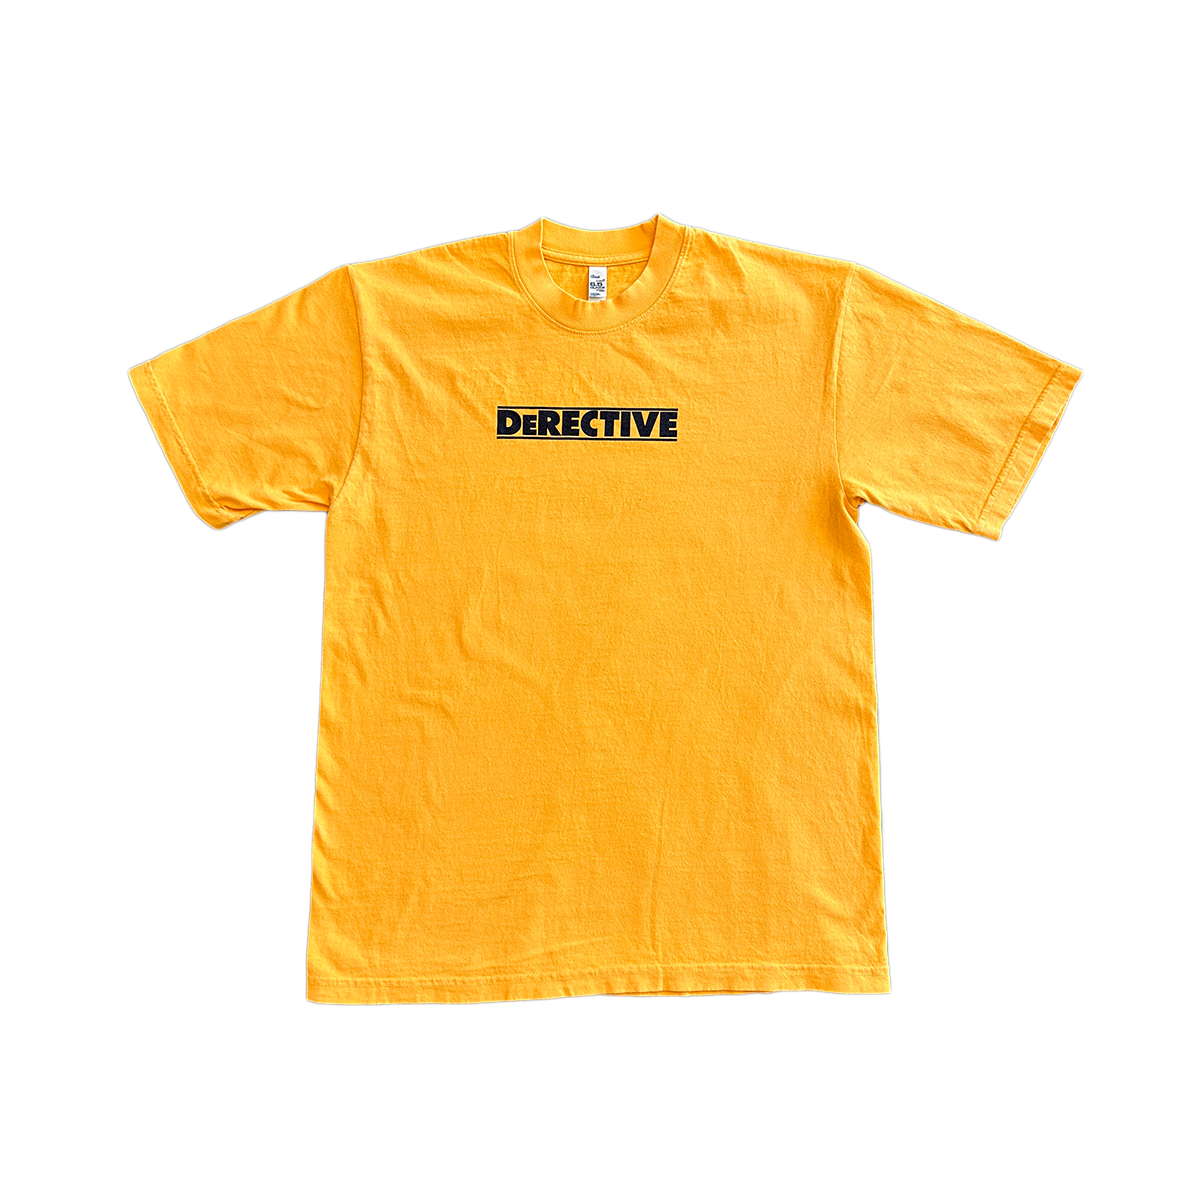 DeRECTIVE T-Shirt - Gold